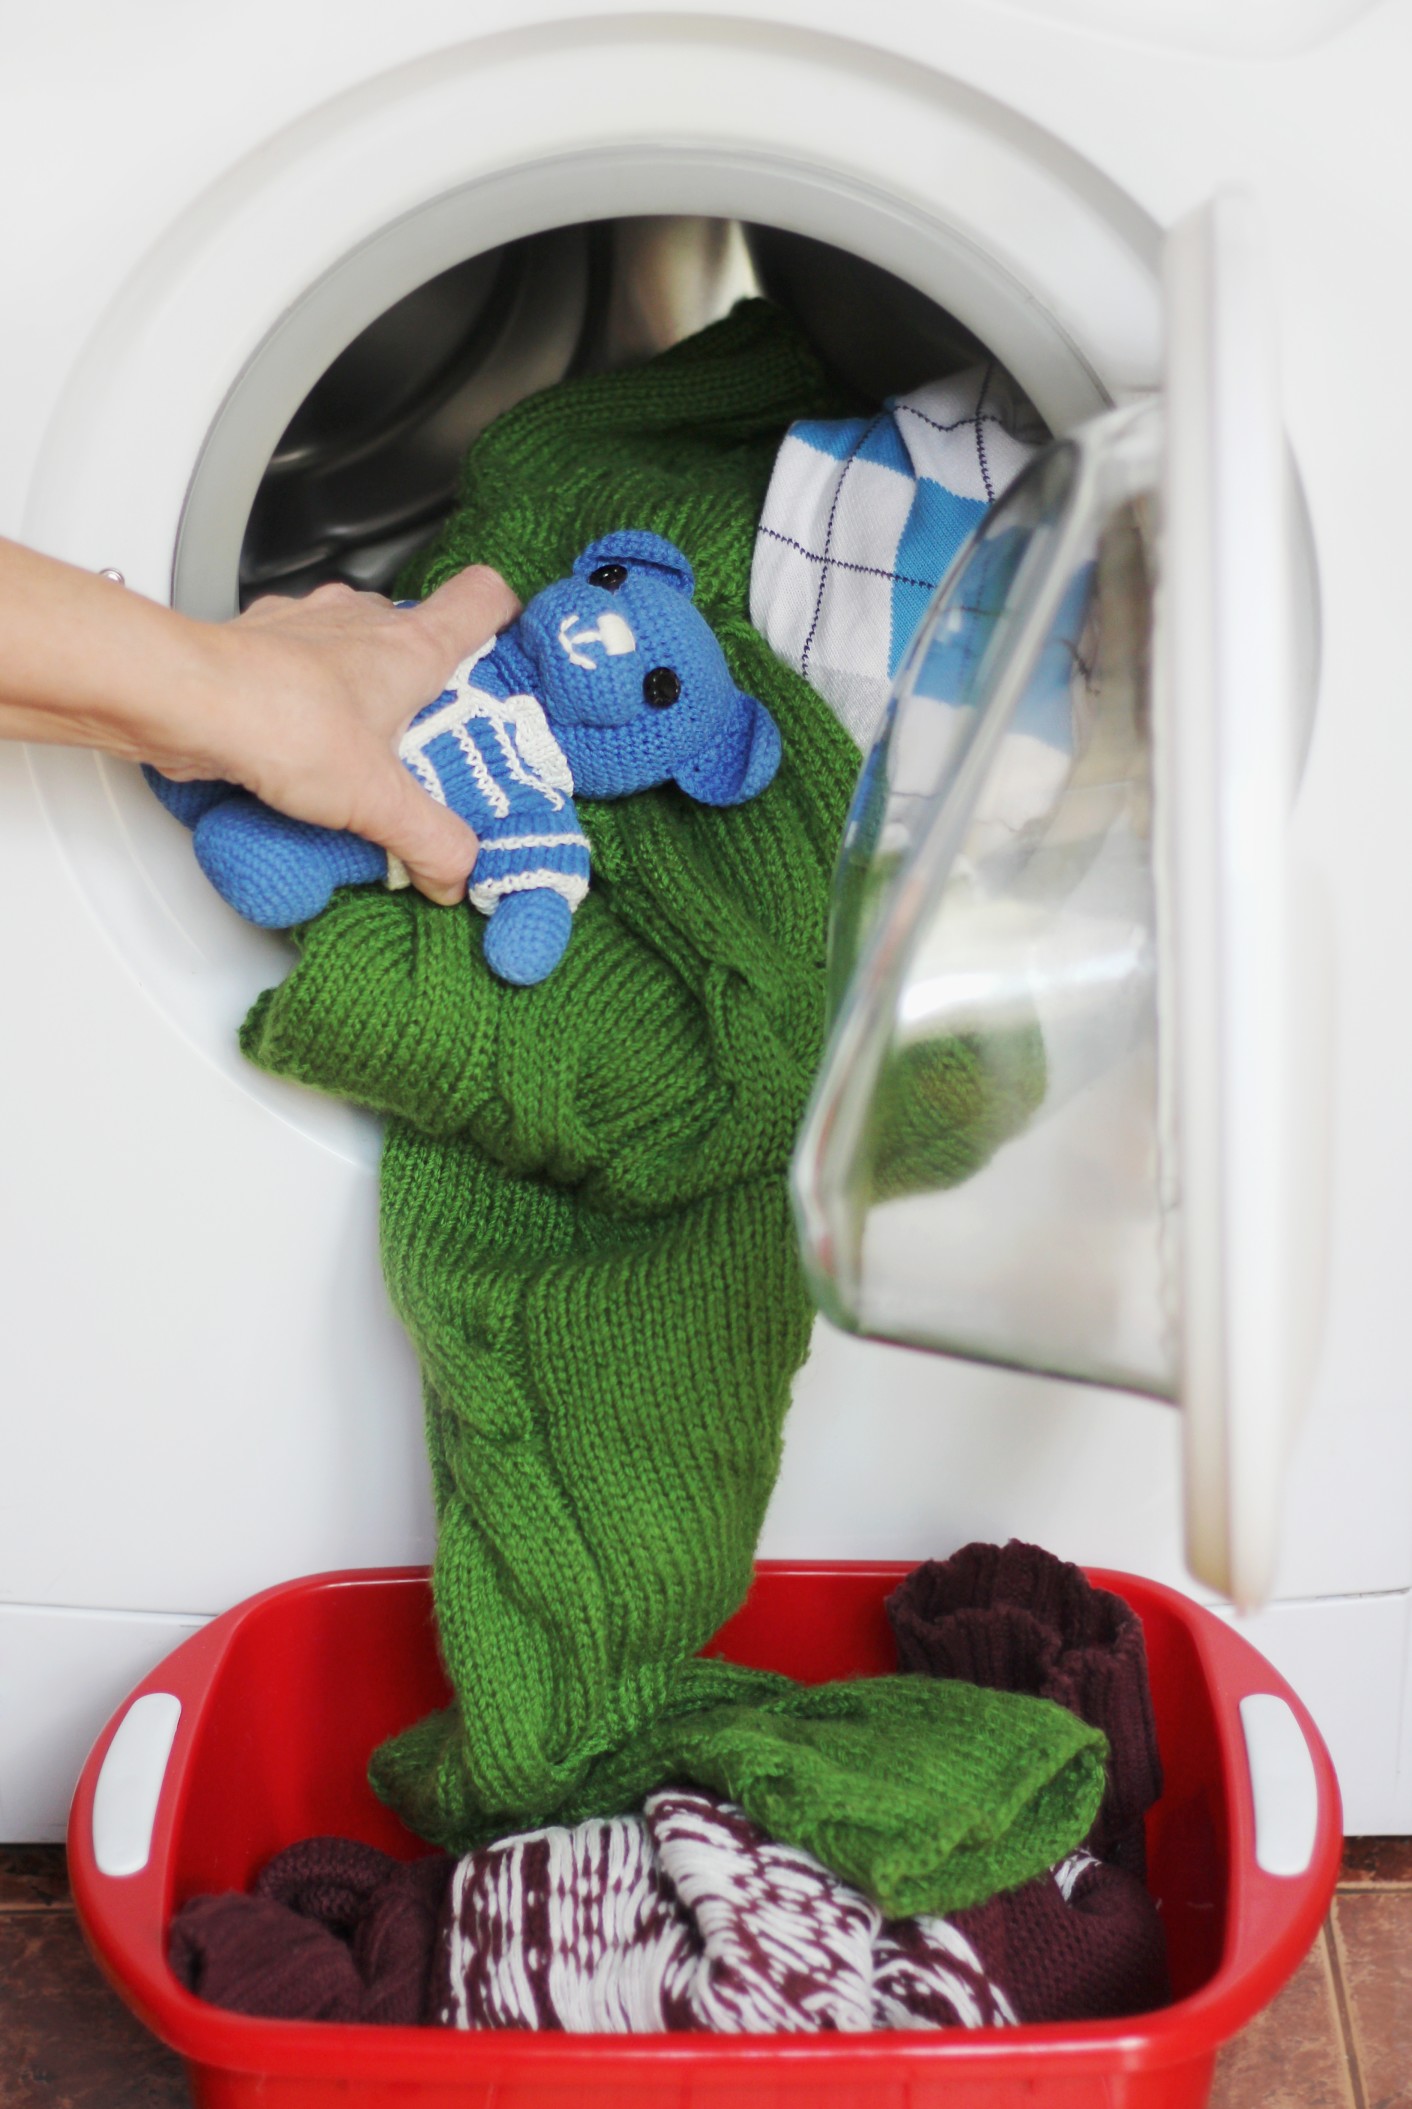 Waschmaschine - worauf achten? - Trends 2022 für Apps & effektive Nutzung! Bild: @MIRAHNEVA via Twenty20